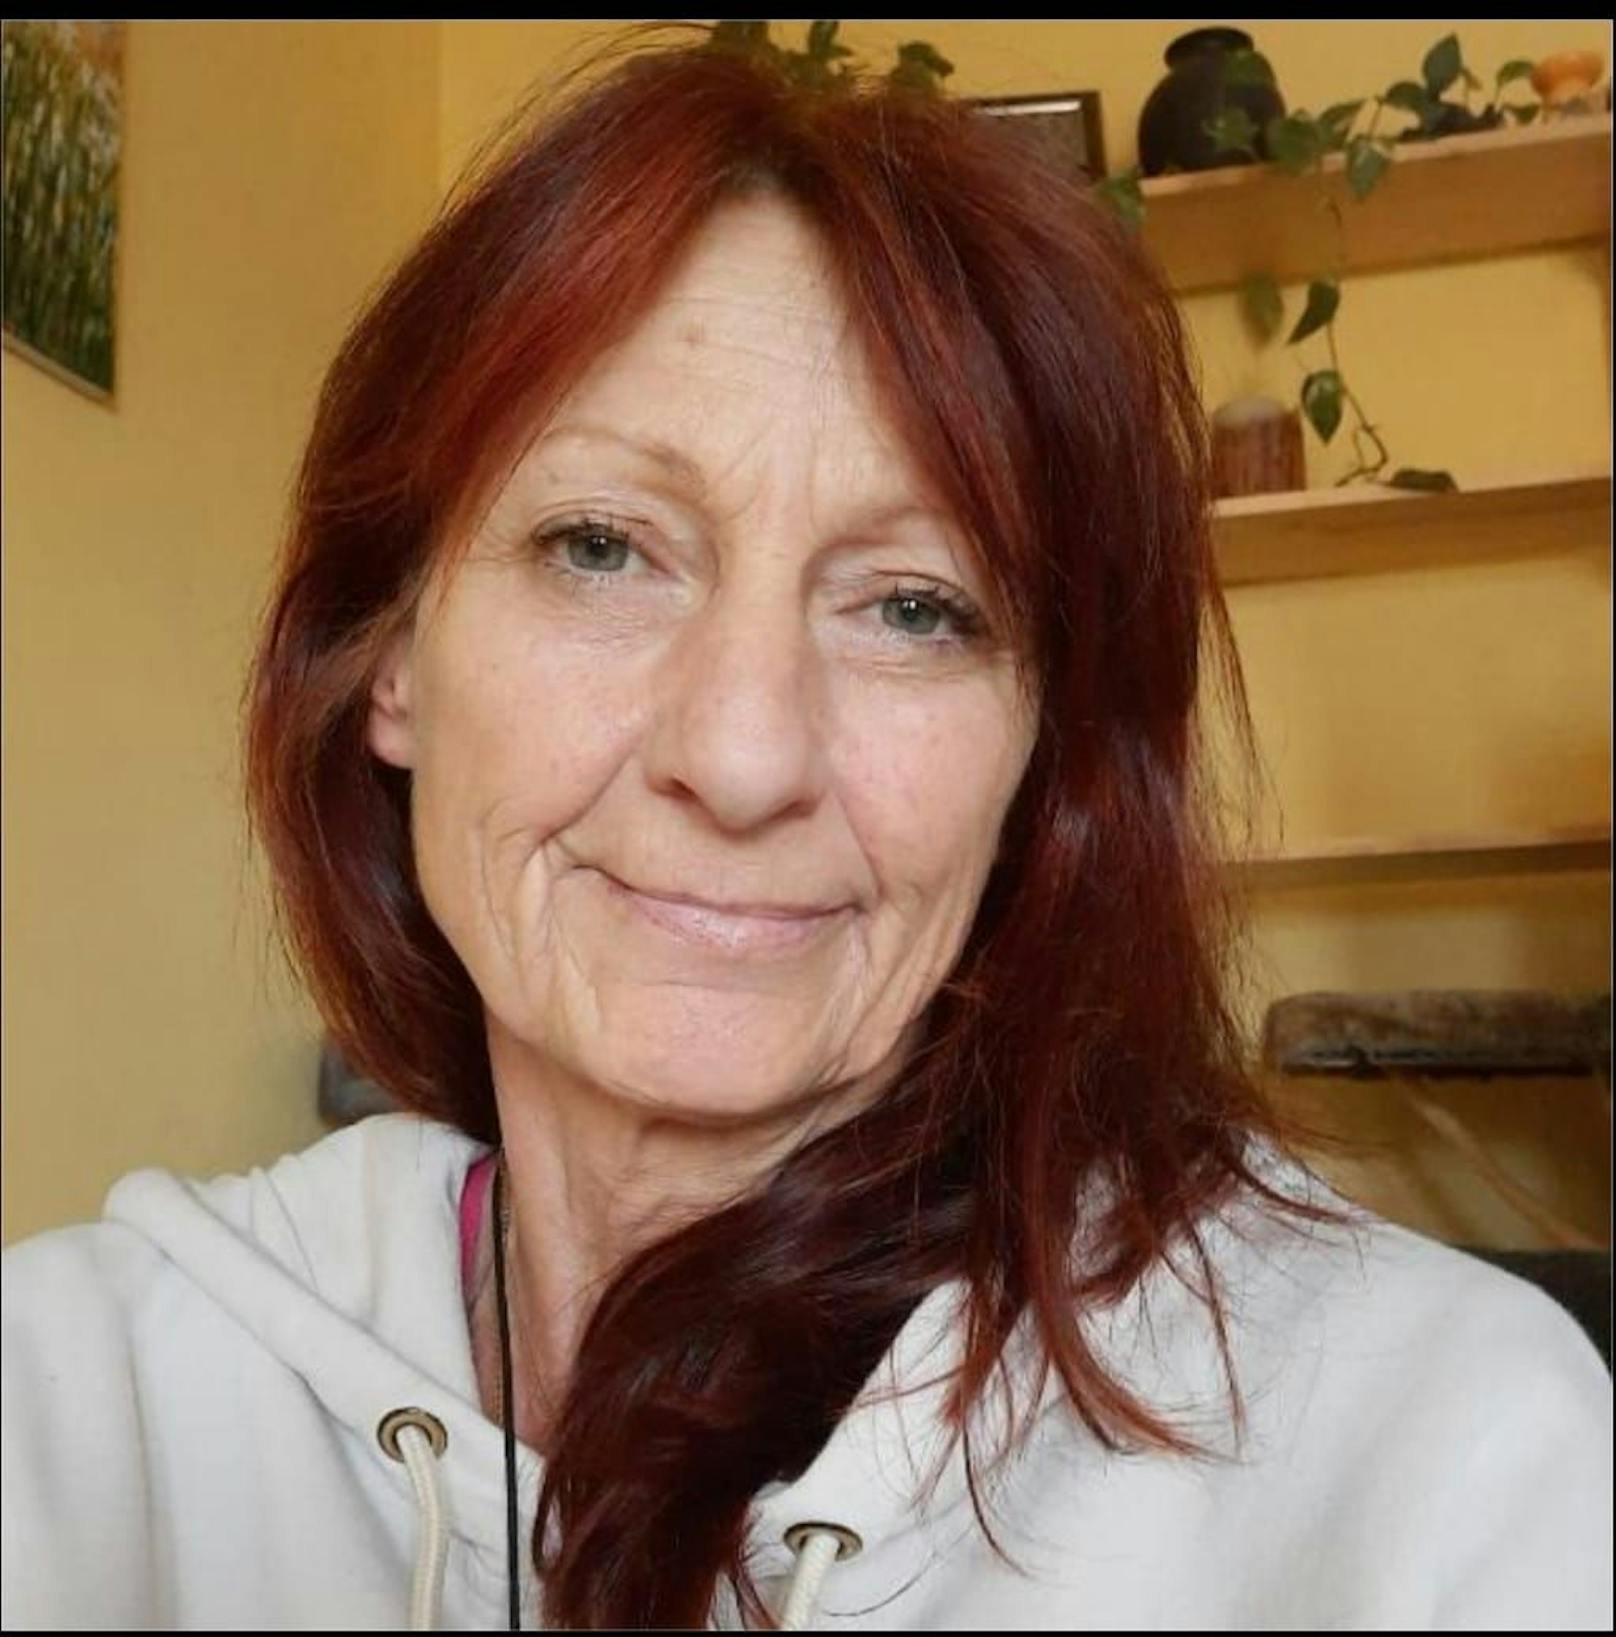 Marion M. (55) bekommt unter 1.000 Euro Mindestpension